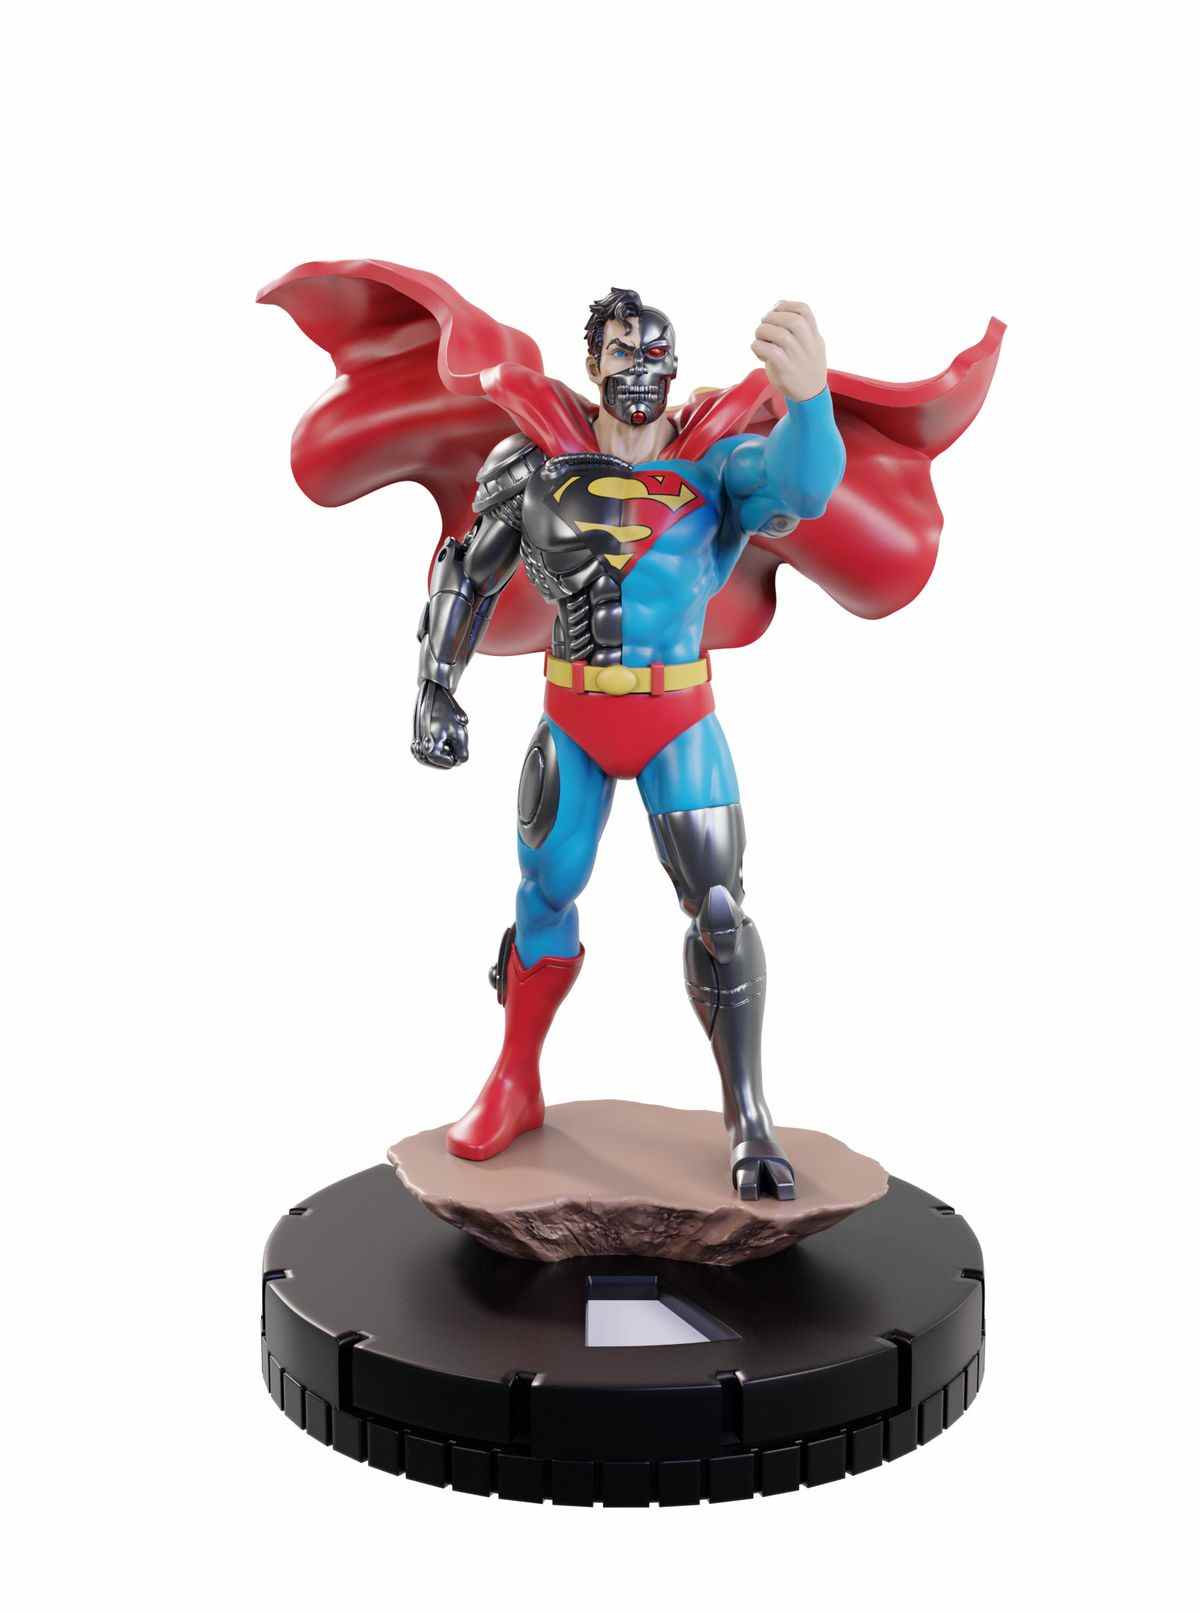 Cyborg Superman lève le poing en signe de défi.  Il s'agit d'une figurine en plastique reposant sur une base encliquetable.